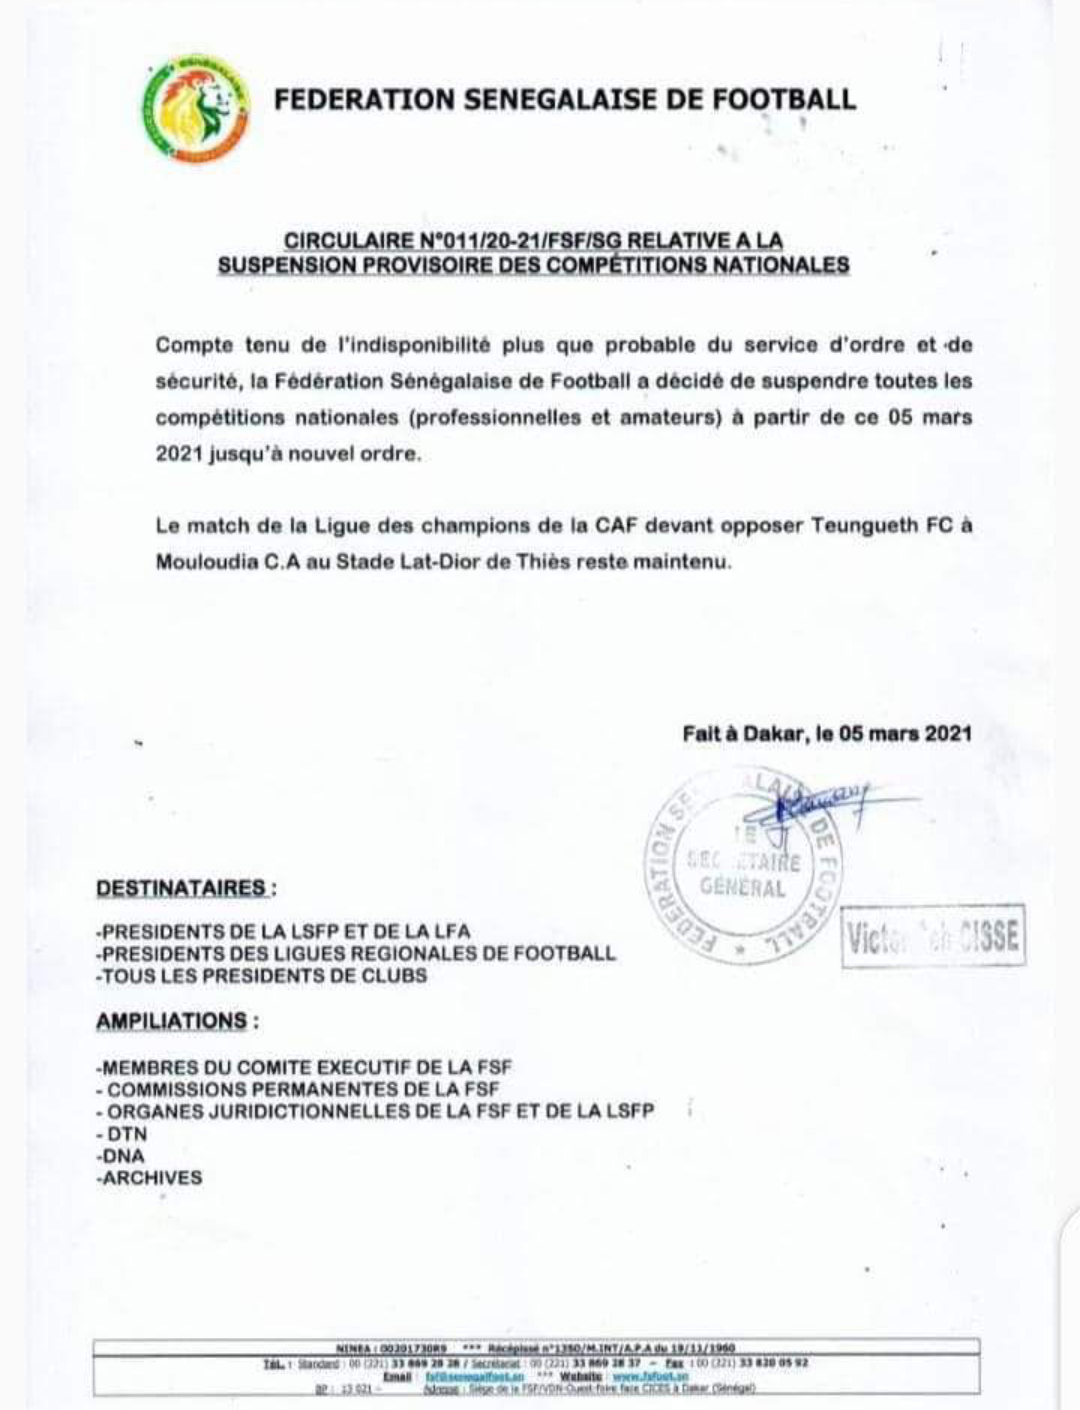 Conséquences des manifestations :  La fédération sénégalaise de football suspend provisoirement les matches.